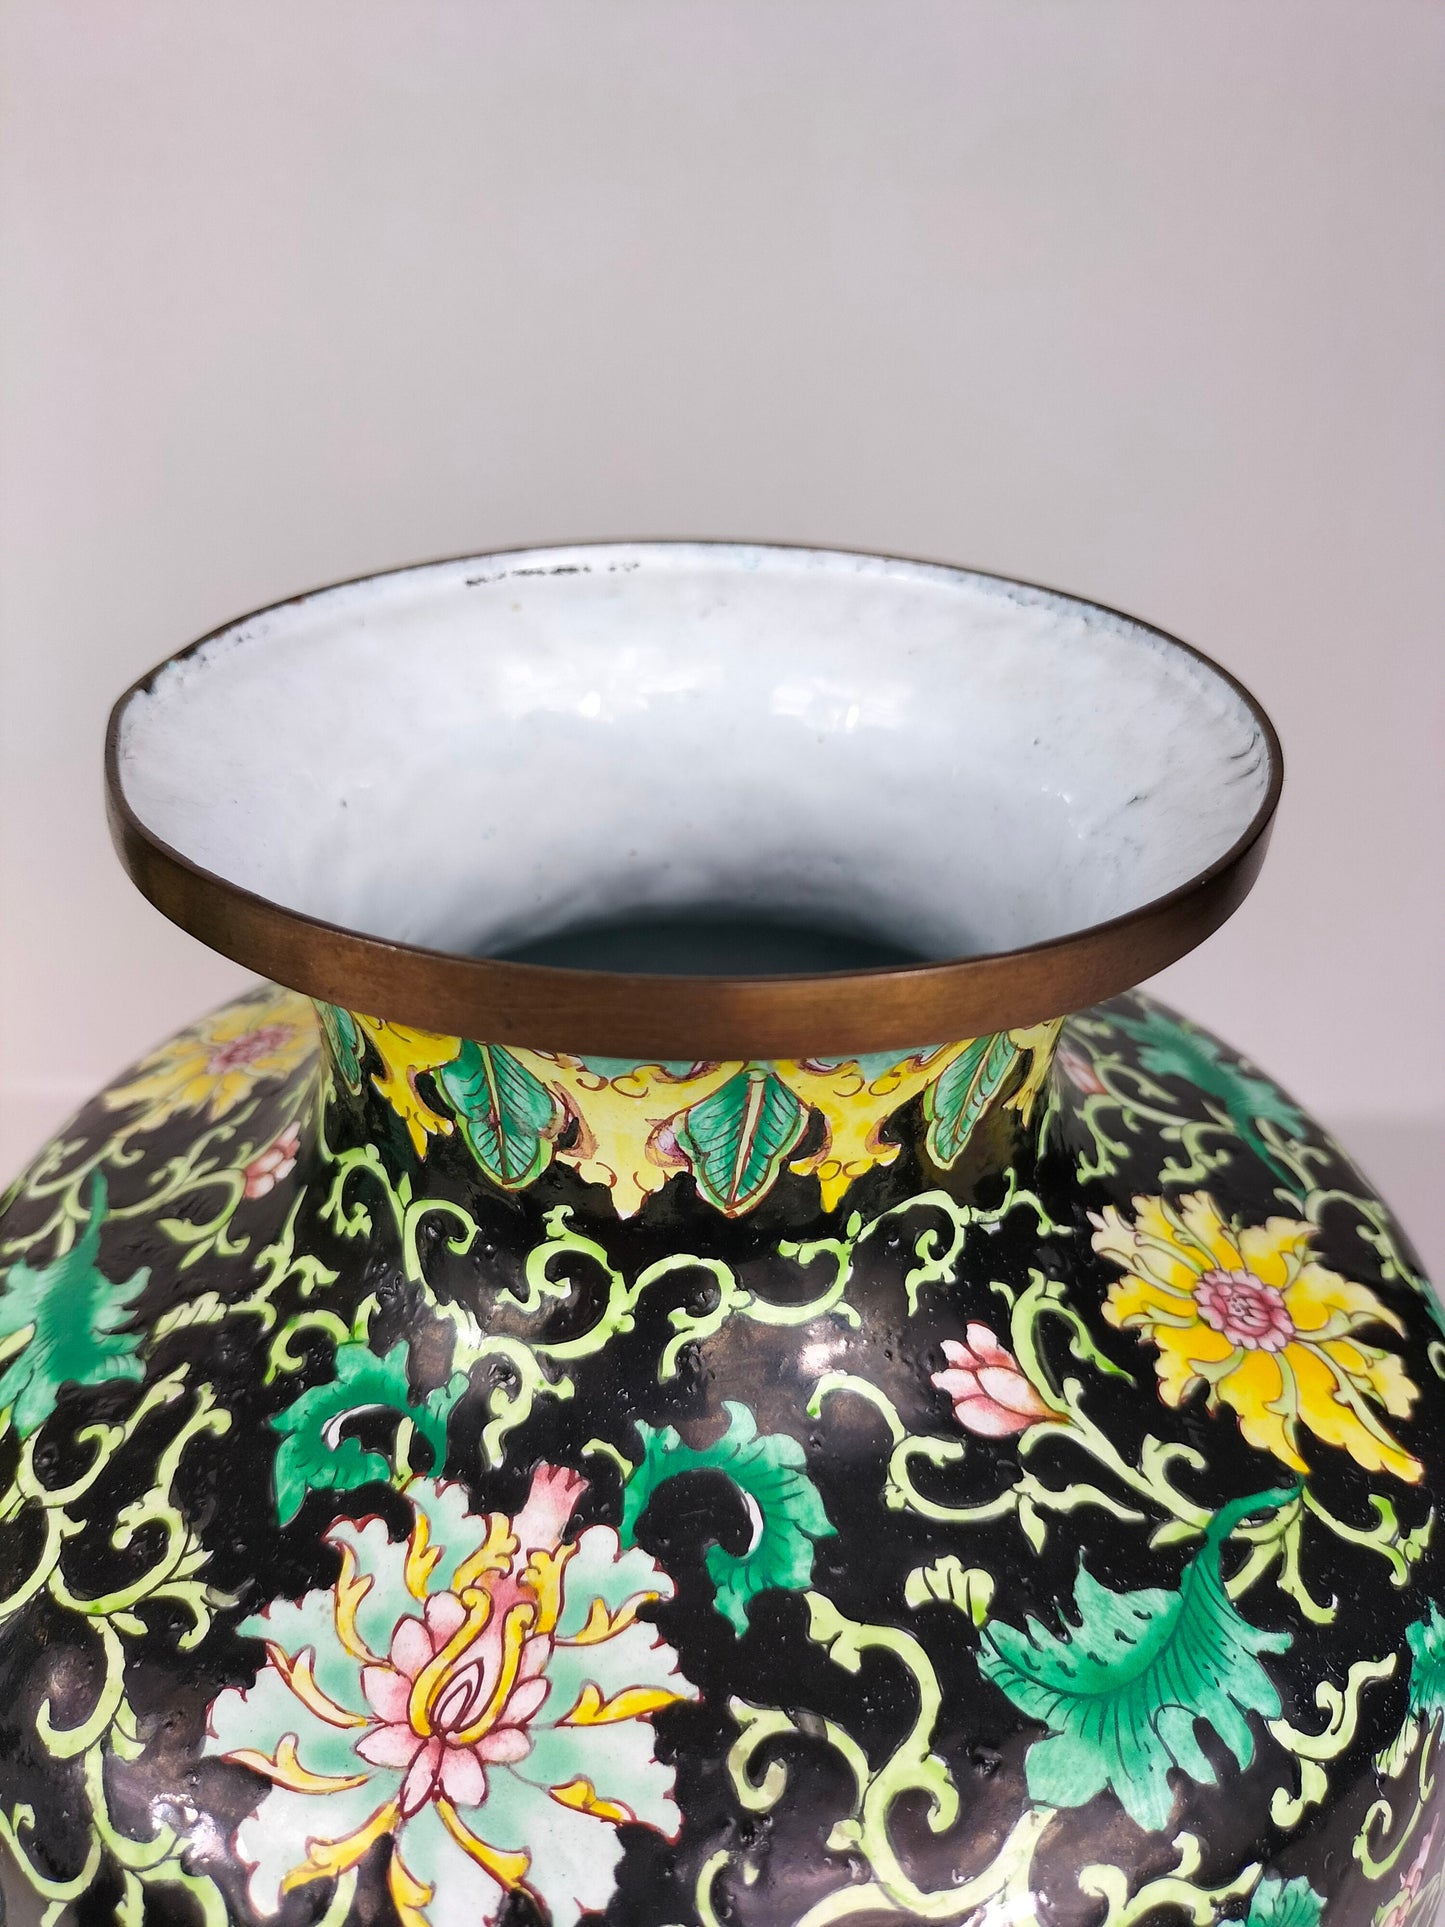 Par de grandes vasos chineses decorados com flores e pássaros // Esmalte cantão - século XX